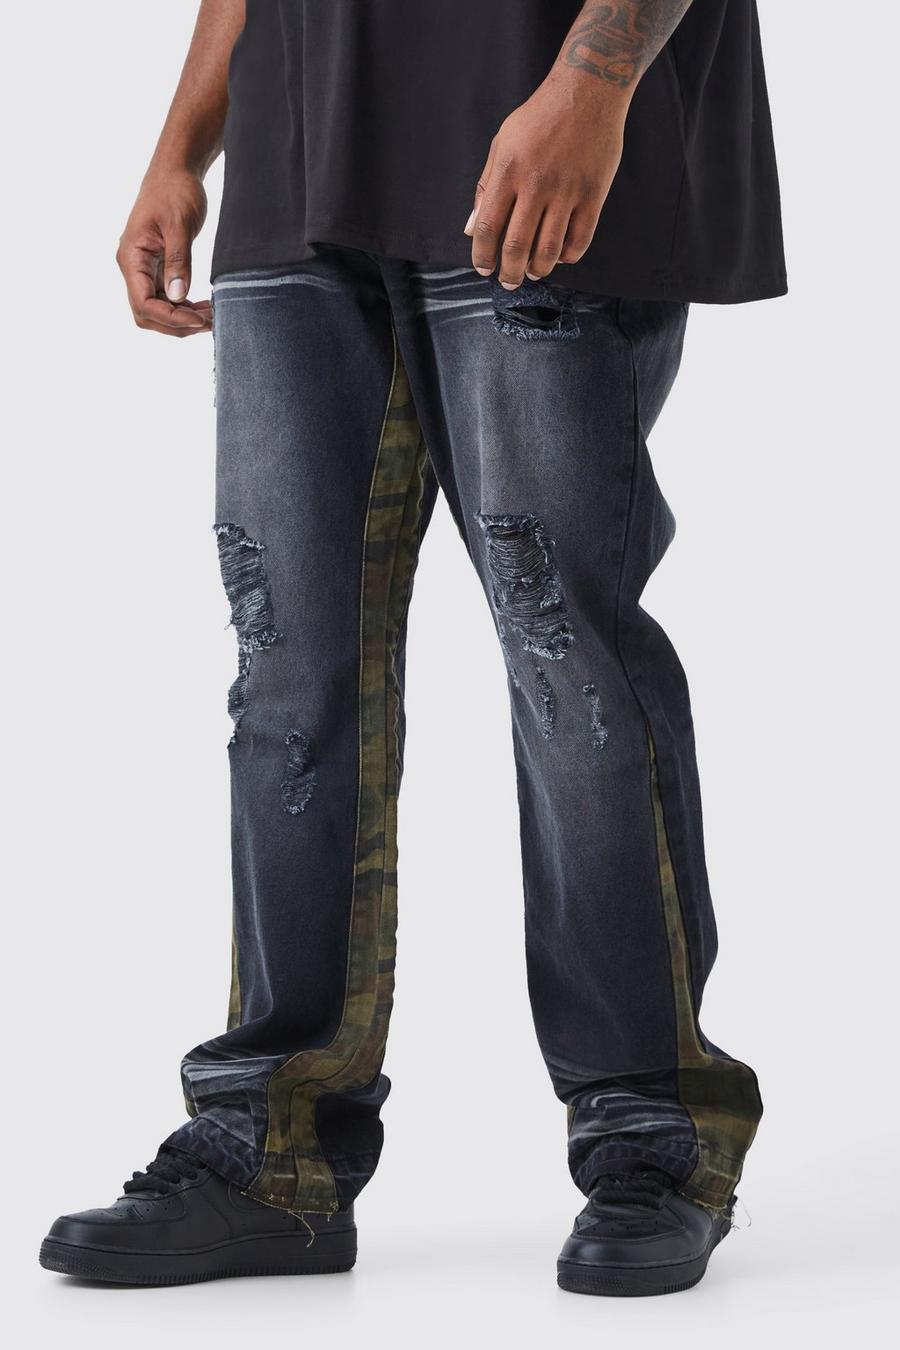 Jeans Plus Size Slim Fit in denim rigido con inserti a contrasto, Washed black